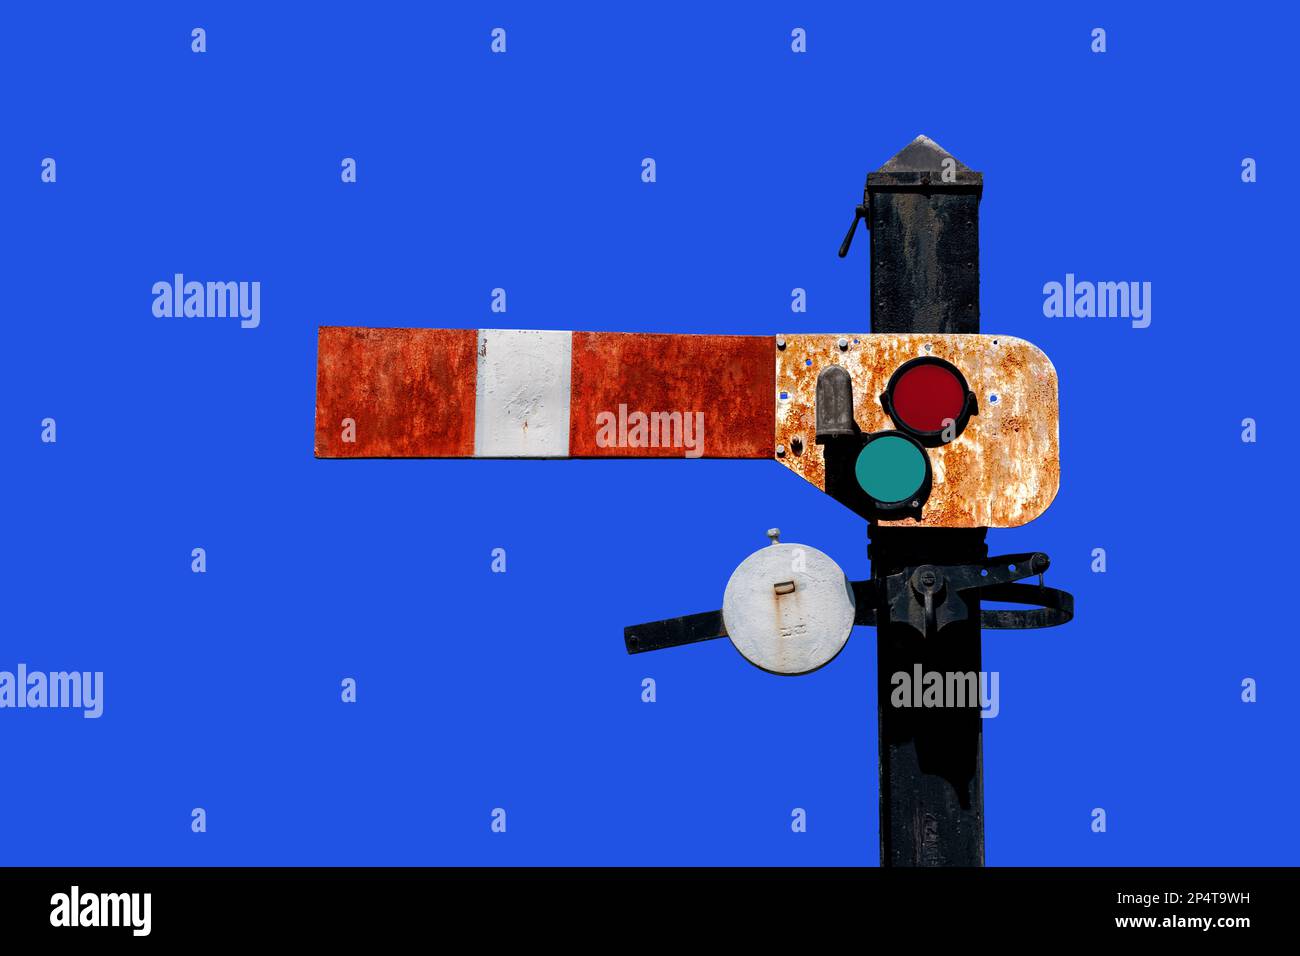 Indicador de semáforo de ferrocarril italiano antiguo vintage que muestra, señal con len rojo naranja y verde aislado en el cielo azul con ruta de recorte incluida Foto de stock